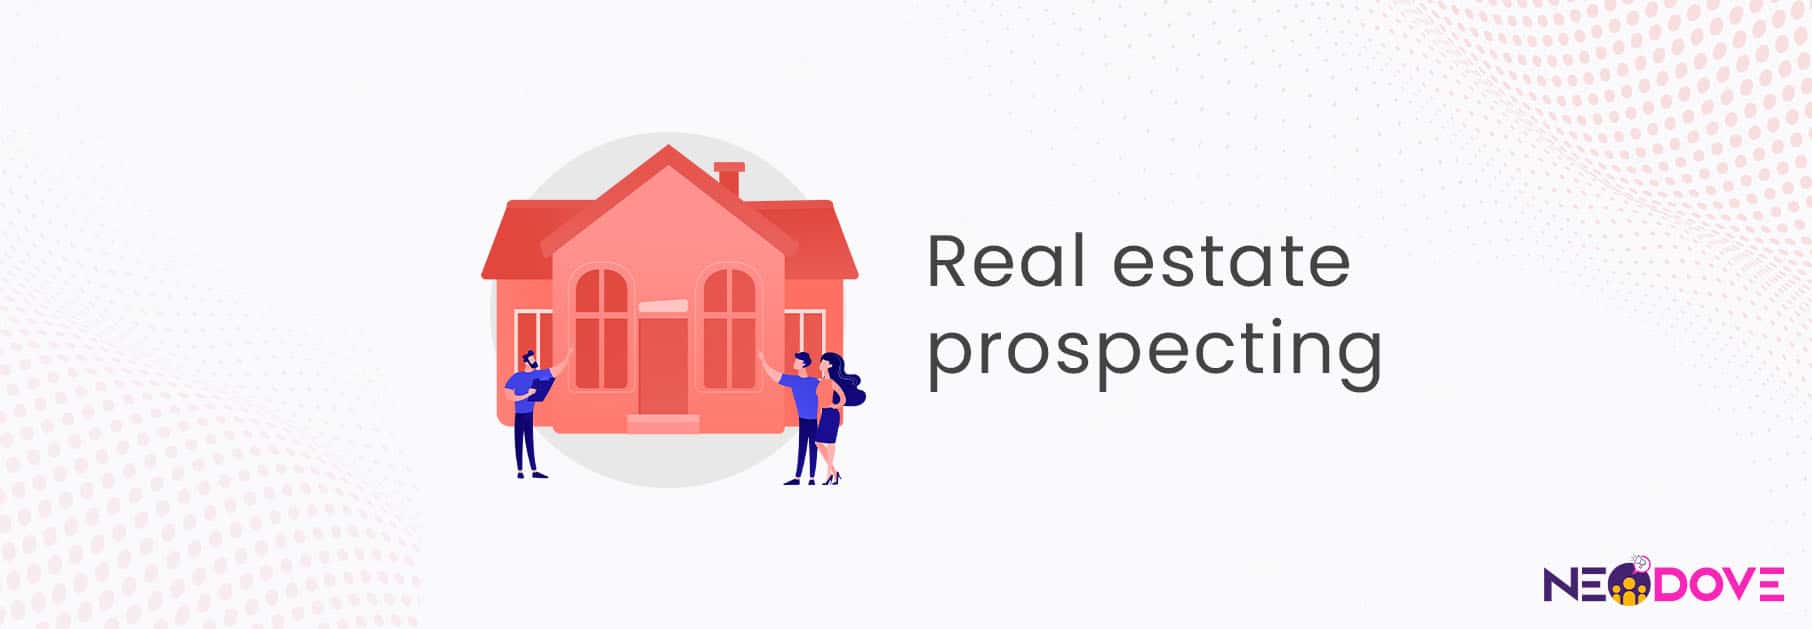 real estate prospect management